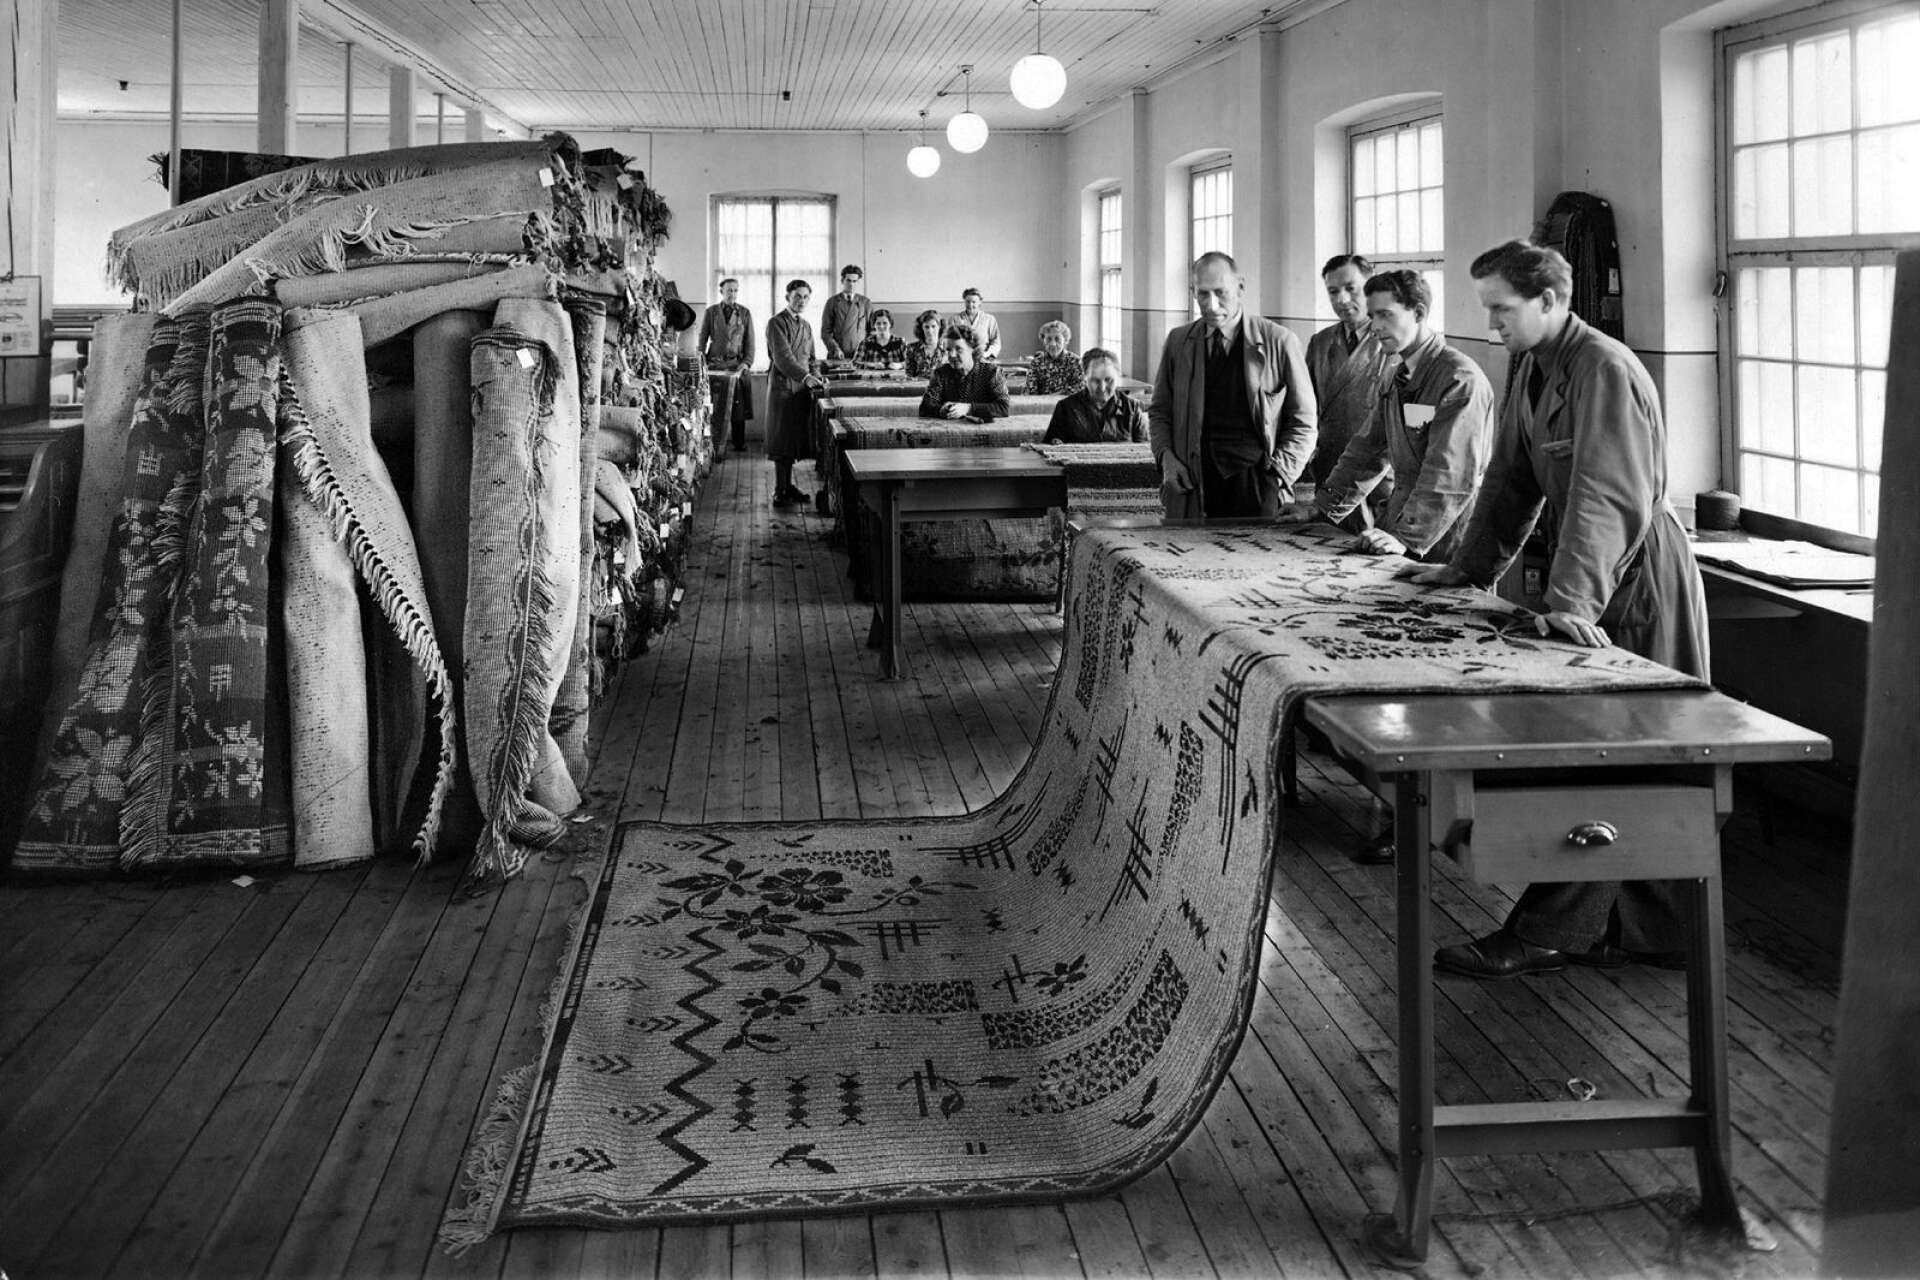 Stora, fina mattor tillverkades på Spinneriet, eller Mattfabriken som den också kallades i folkmun.